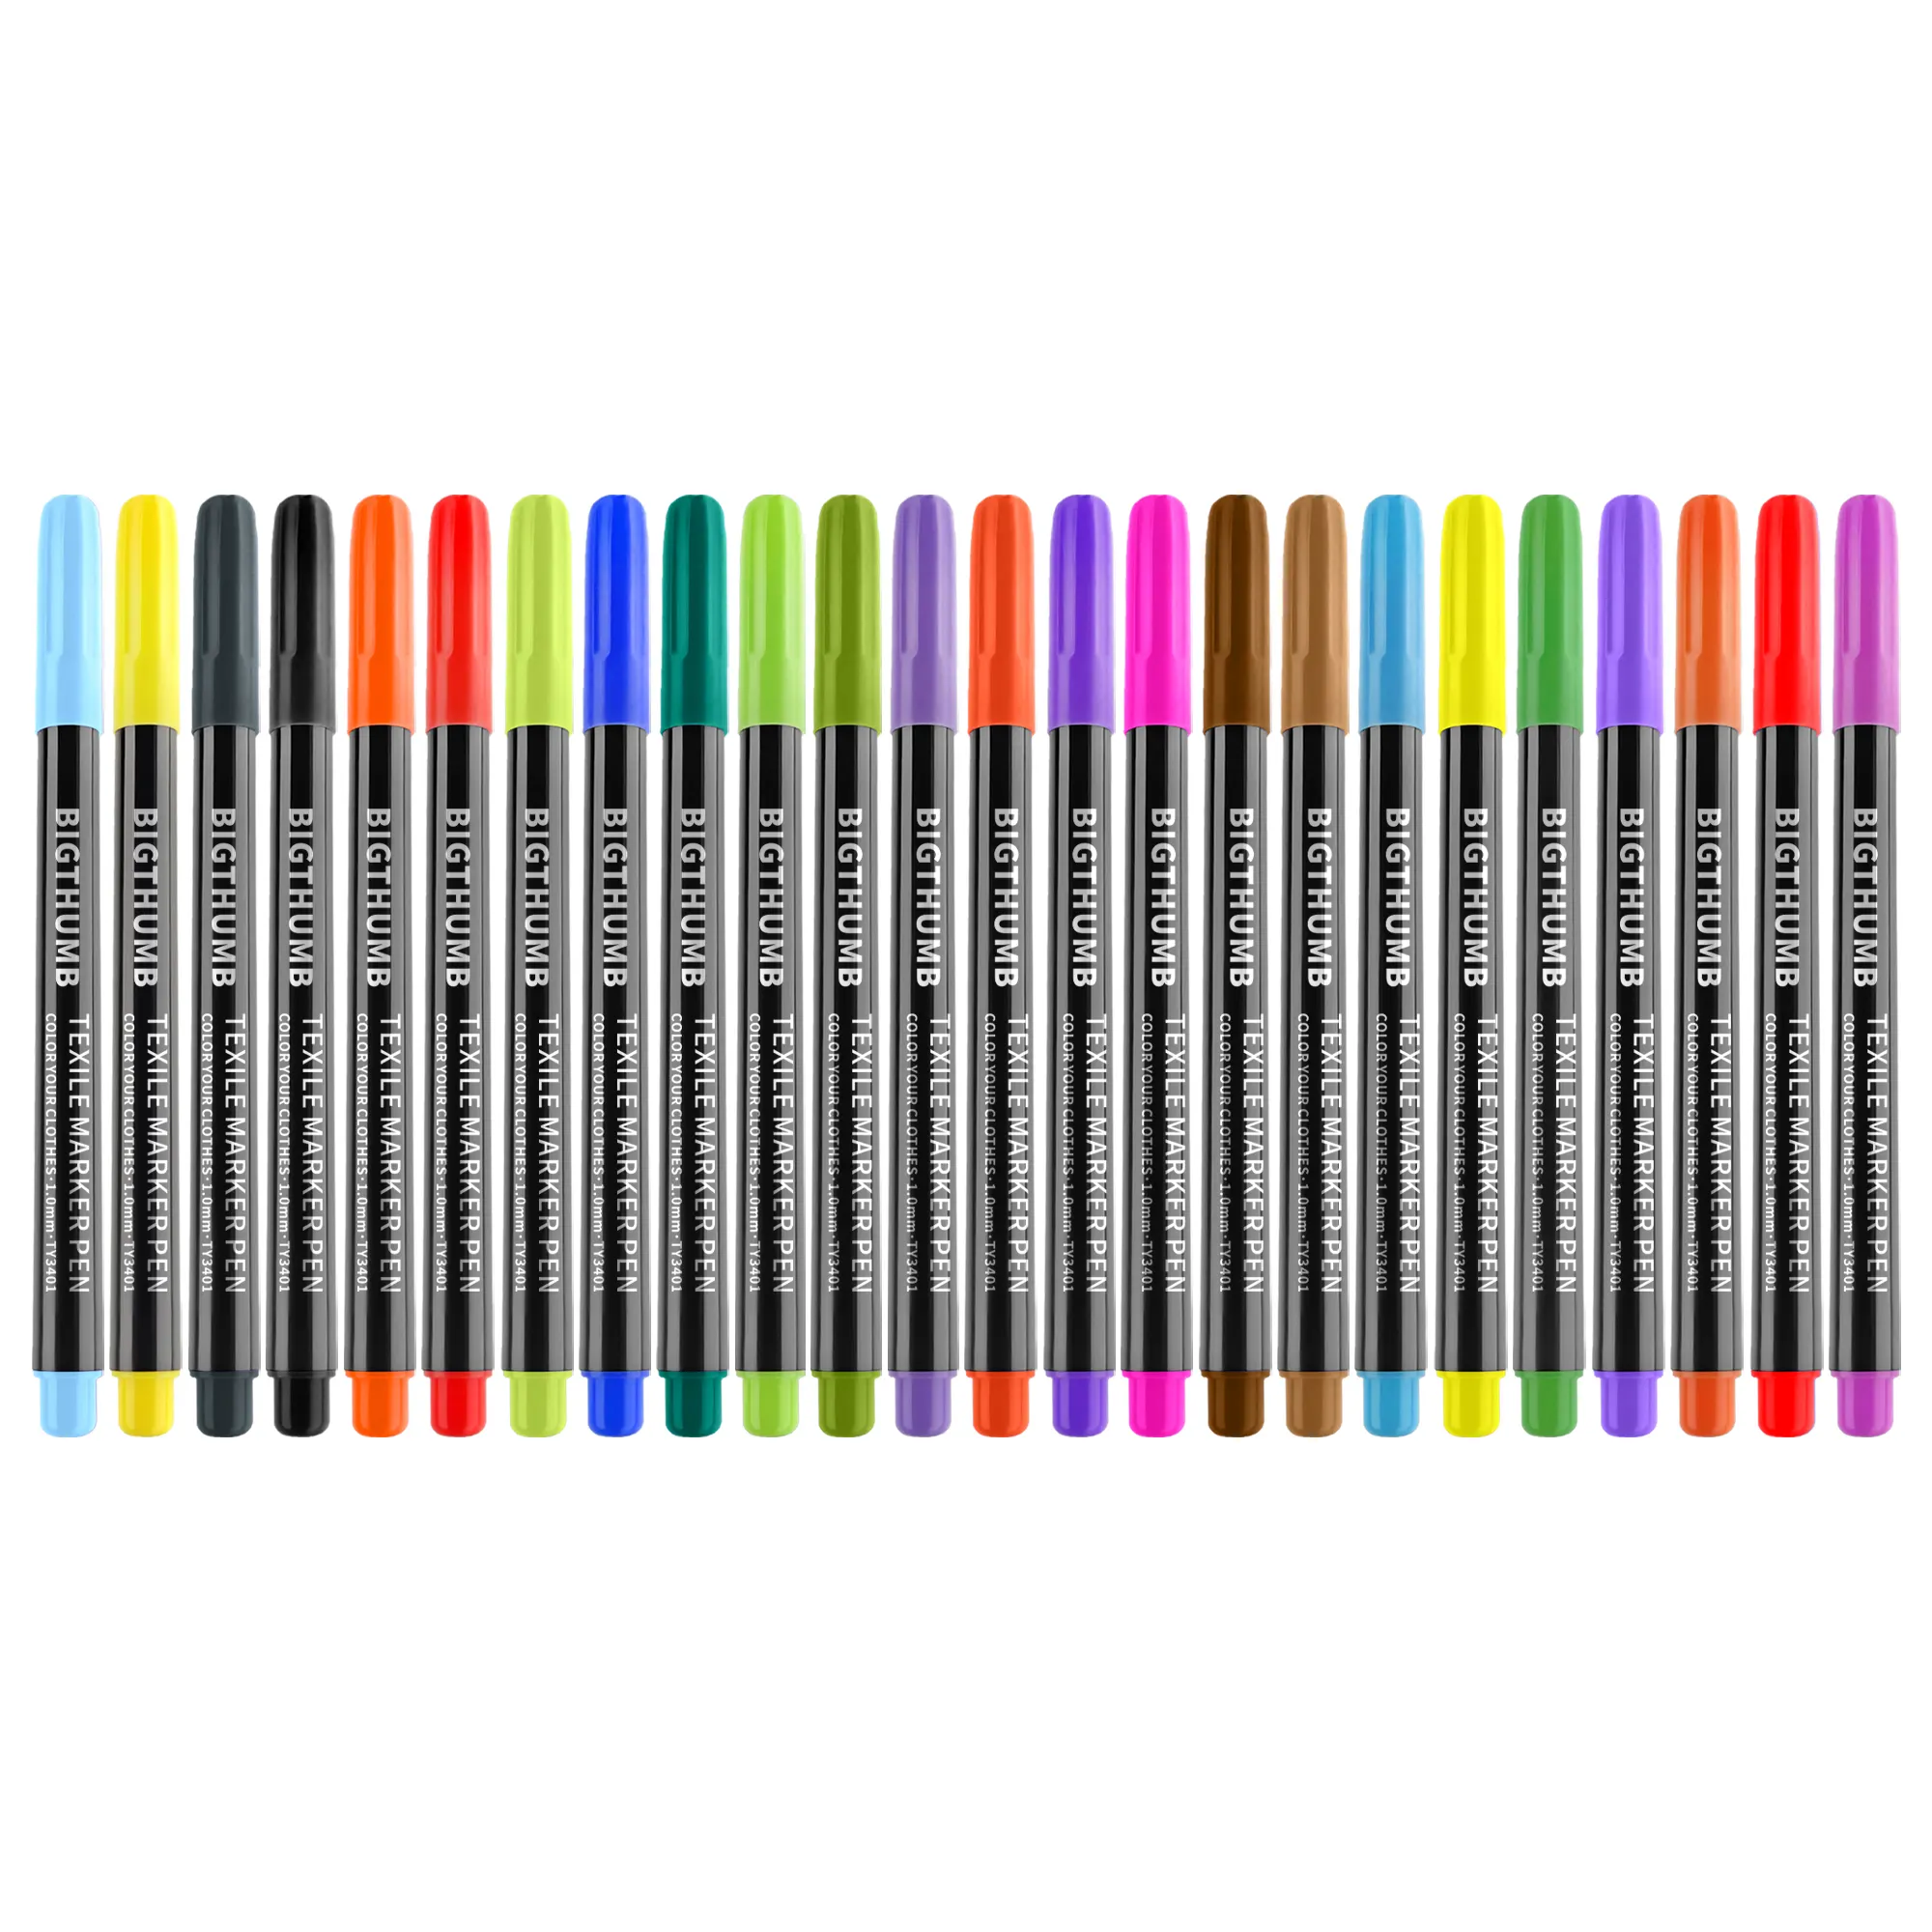 10色ファブリックマーカーペンセット-無毒ファブリックペイントファインポイントテキスタイルマーカーペン